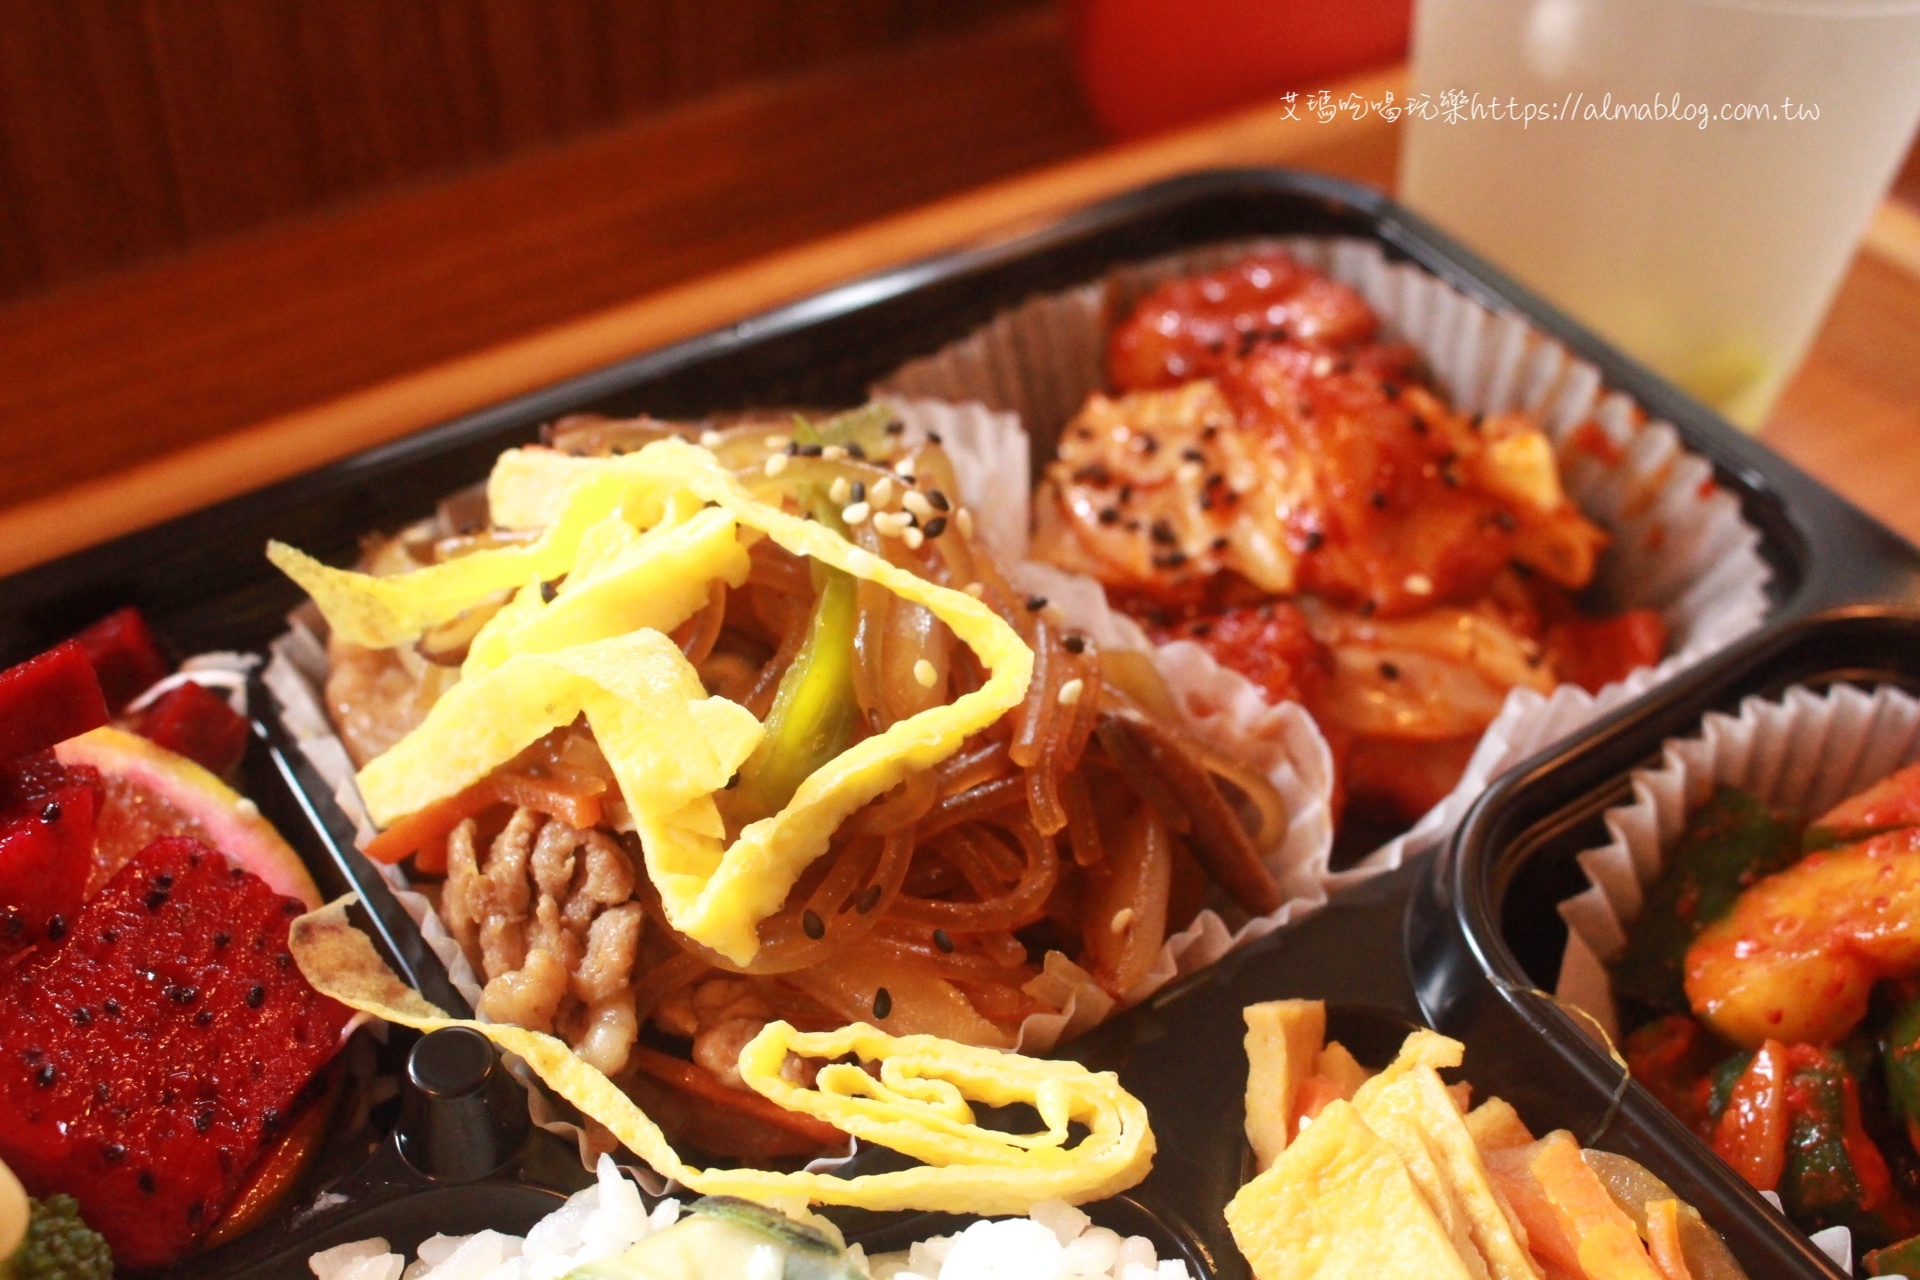 Finebox好食,八德好吃,桃園美食,豪華便當,豬肉年糕餅,韓式便當